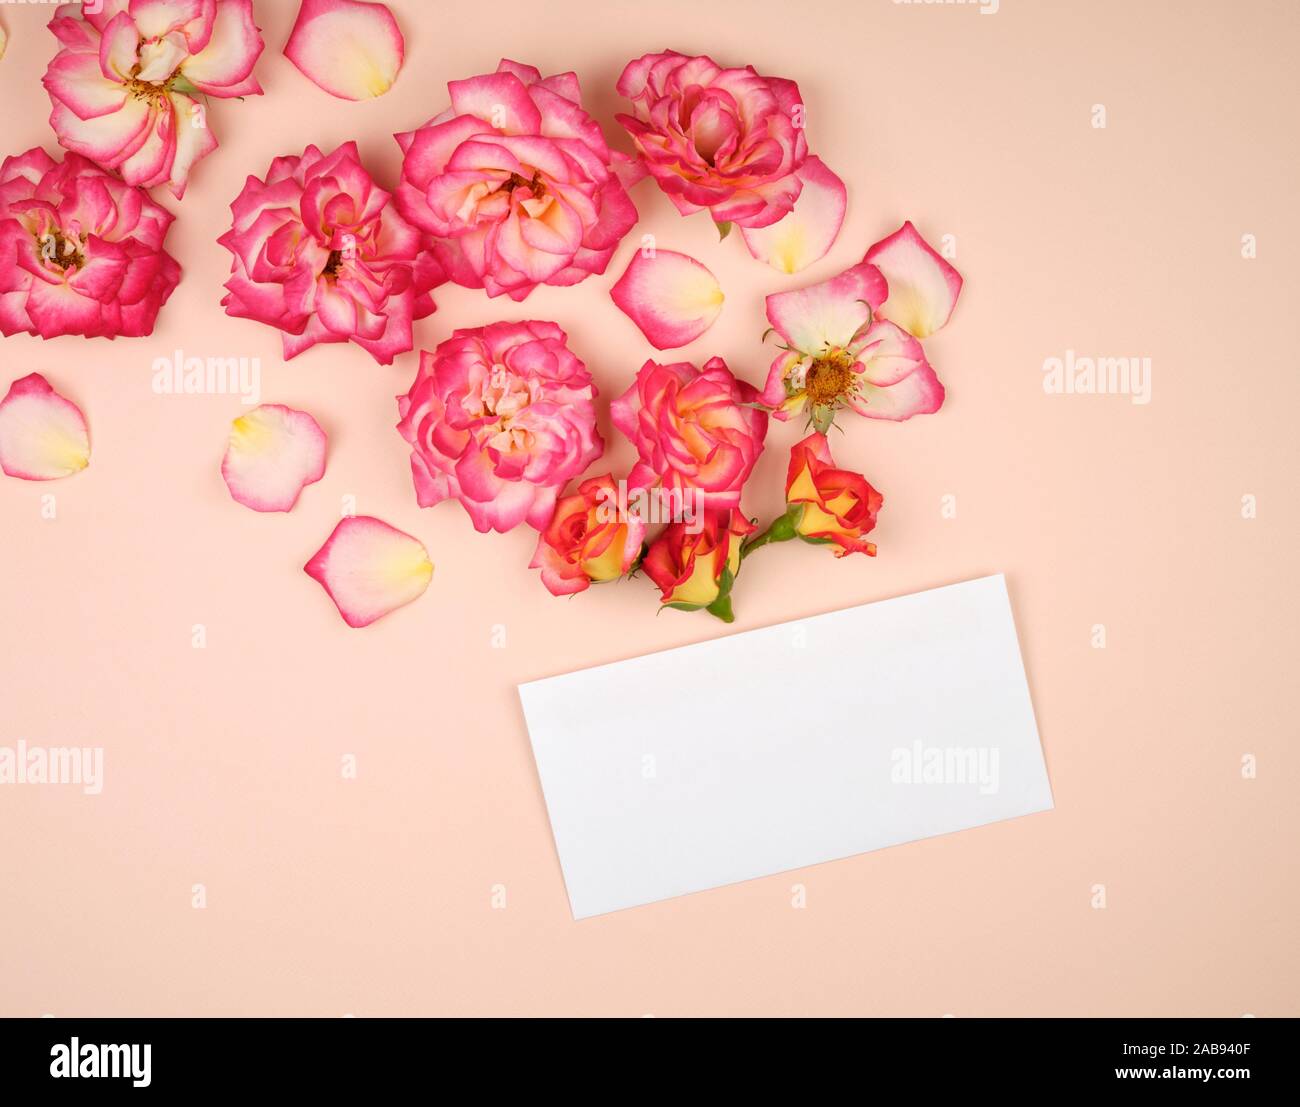 Rosa Rose Knospen und ein weißes Papier Umschlag auf einem bieg Hintergrund, Ansicht von oben, flach. Stockfoto